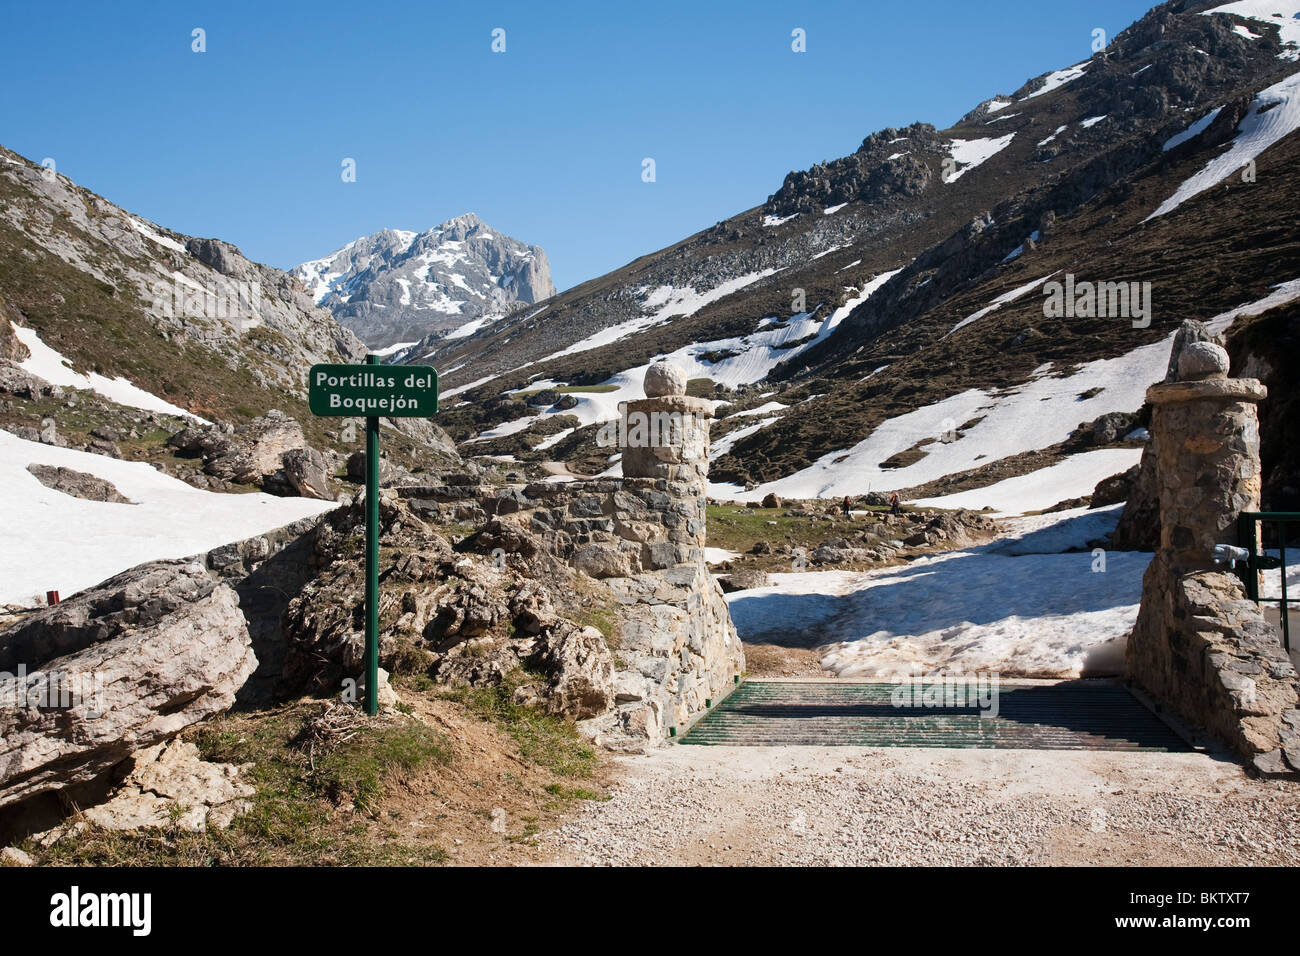 Las portillas del Boquejon alta en los Picos de Europa Fotografía de stock  - Alamy